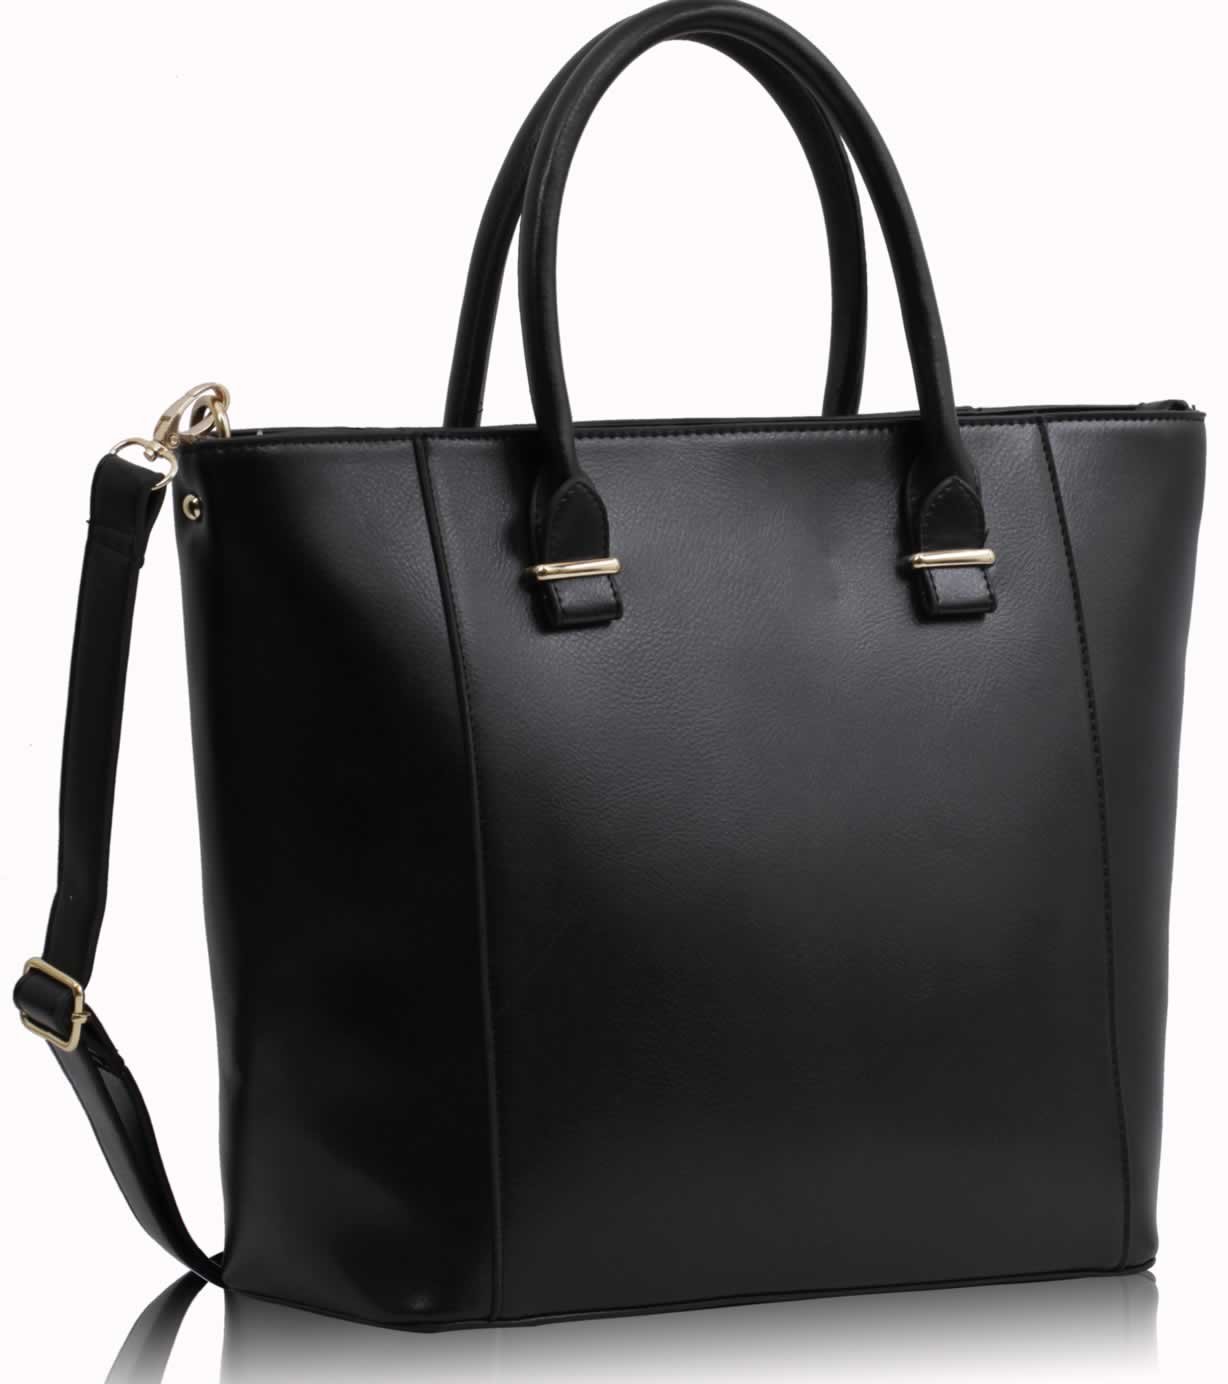 Wholesale Luxury Black Tote Bag